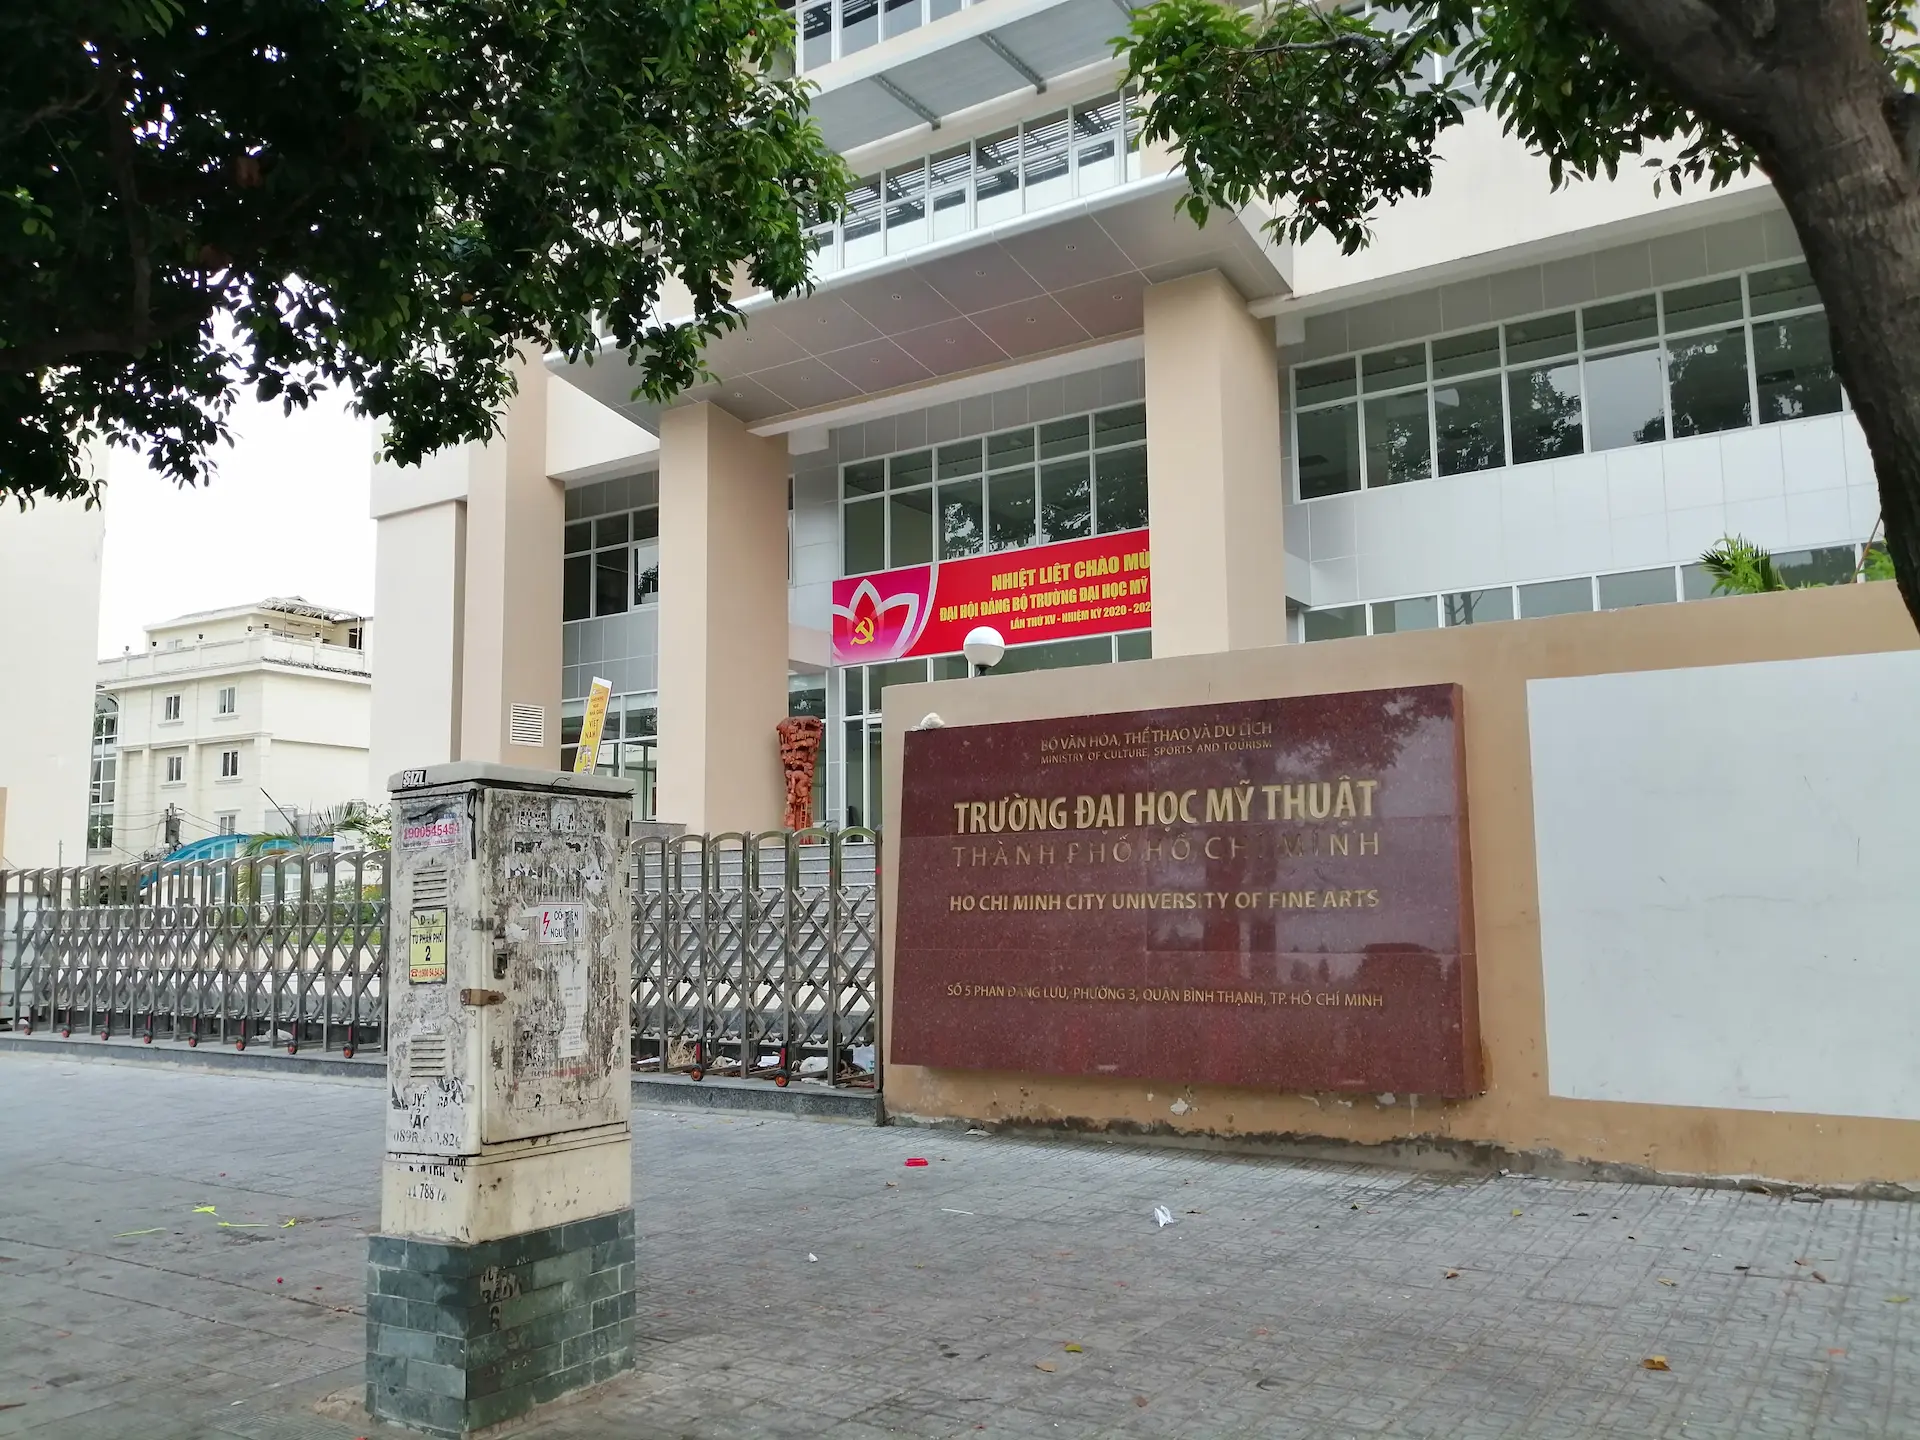 Đại học Mỹ thuật Thành phố Hồ Chí Minh